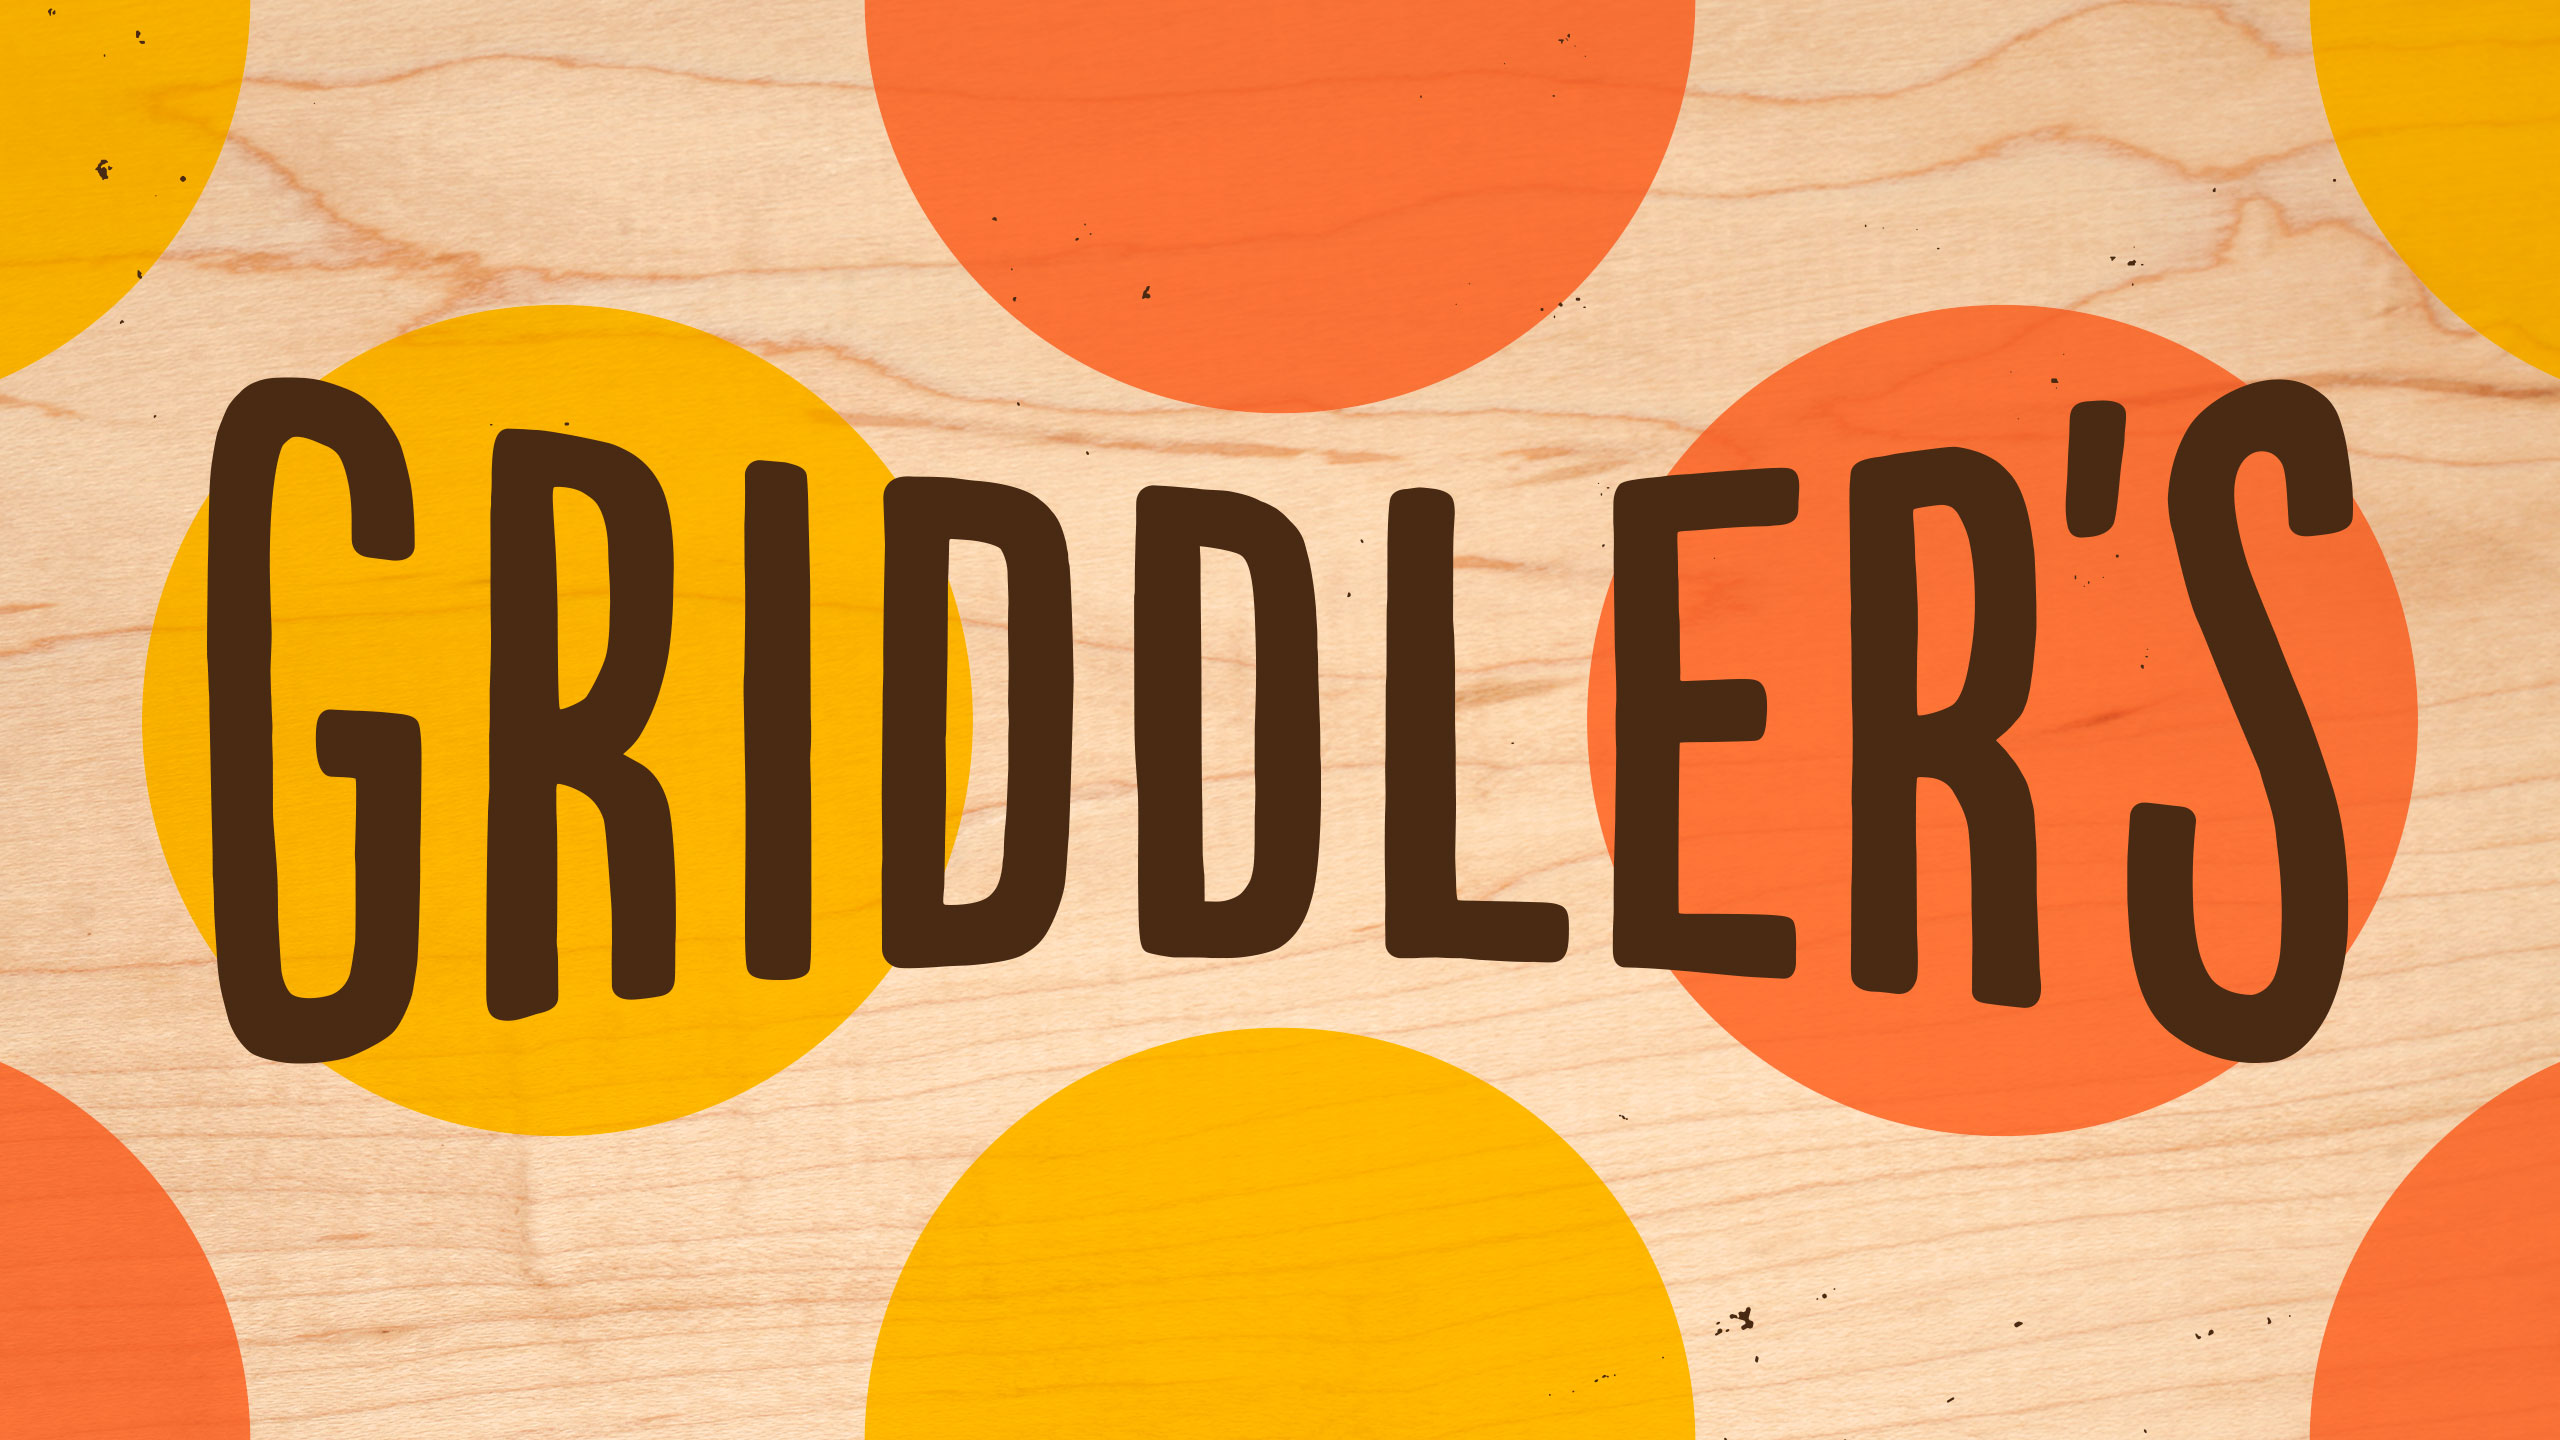 Griddler’s Burgers + Dogs